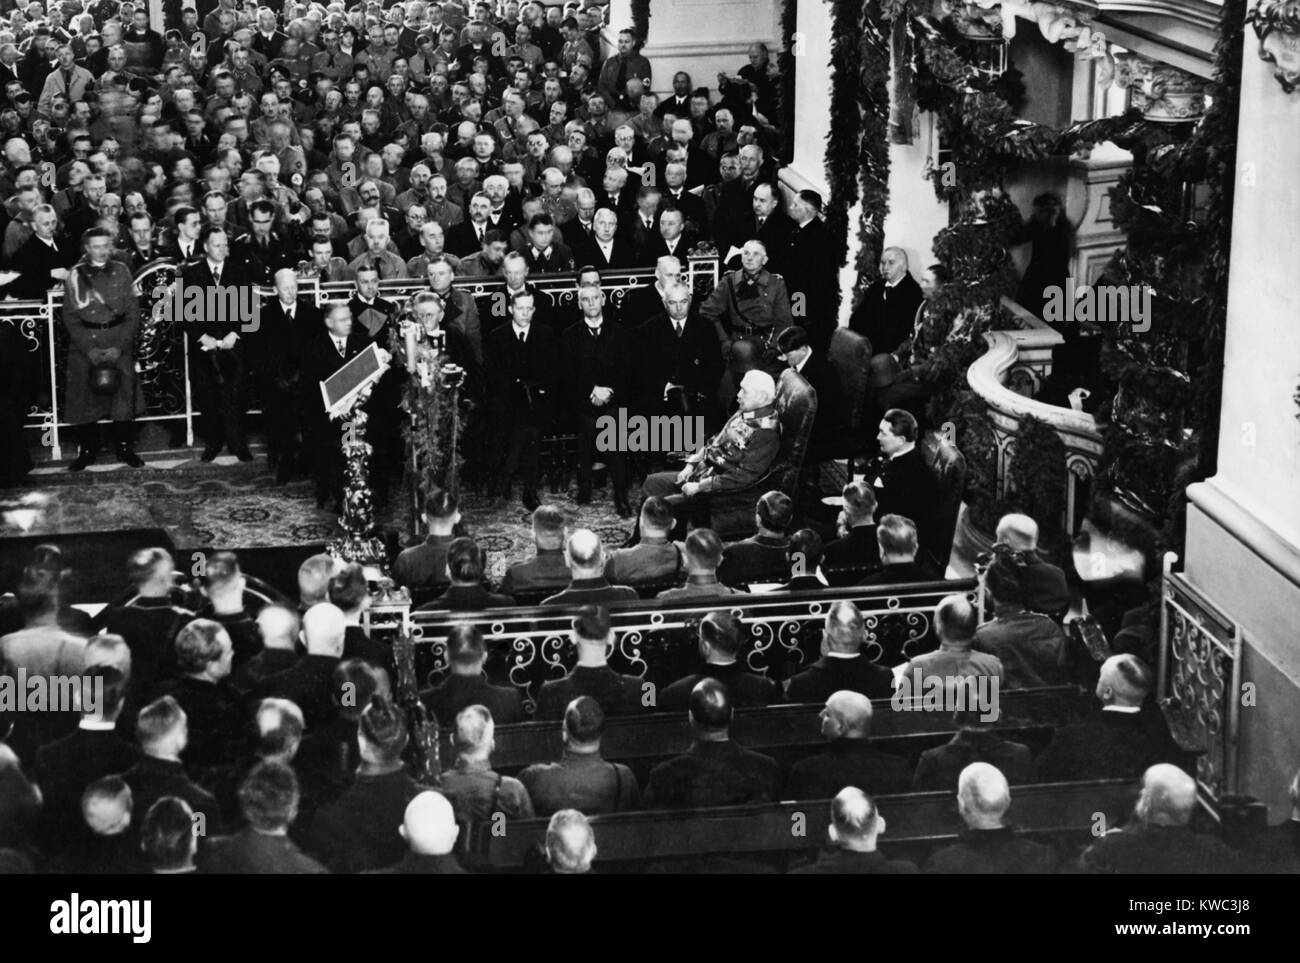 Paul von Hindenburg, Adolf Hitler et Hermann Goering (centre droit), le 21 mars 1933. Ils étaient dans l'église de la garnison de Potsdam pour cérémonies ouverture de la session du Reichstag. Hitler a été nommé chancelier de l'Allemagne le 30 janvier 1933. (BSLOC   2015 14 12) Banque D'Images